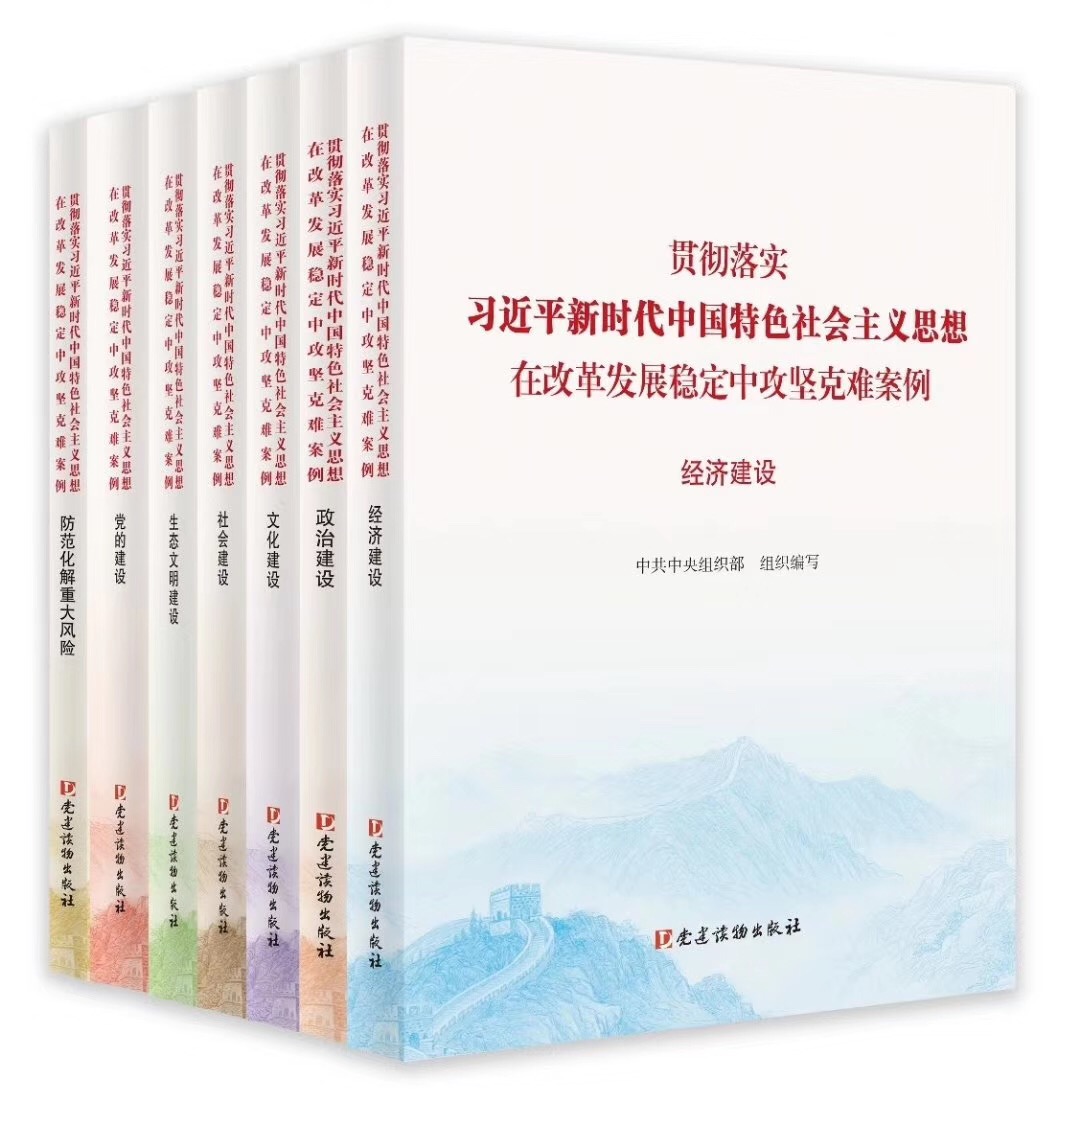 贯彻落实习近平新时代中国特色社会主义思想、在改革发展稳定中攻坚克难案例丛书 全7册